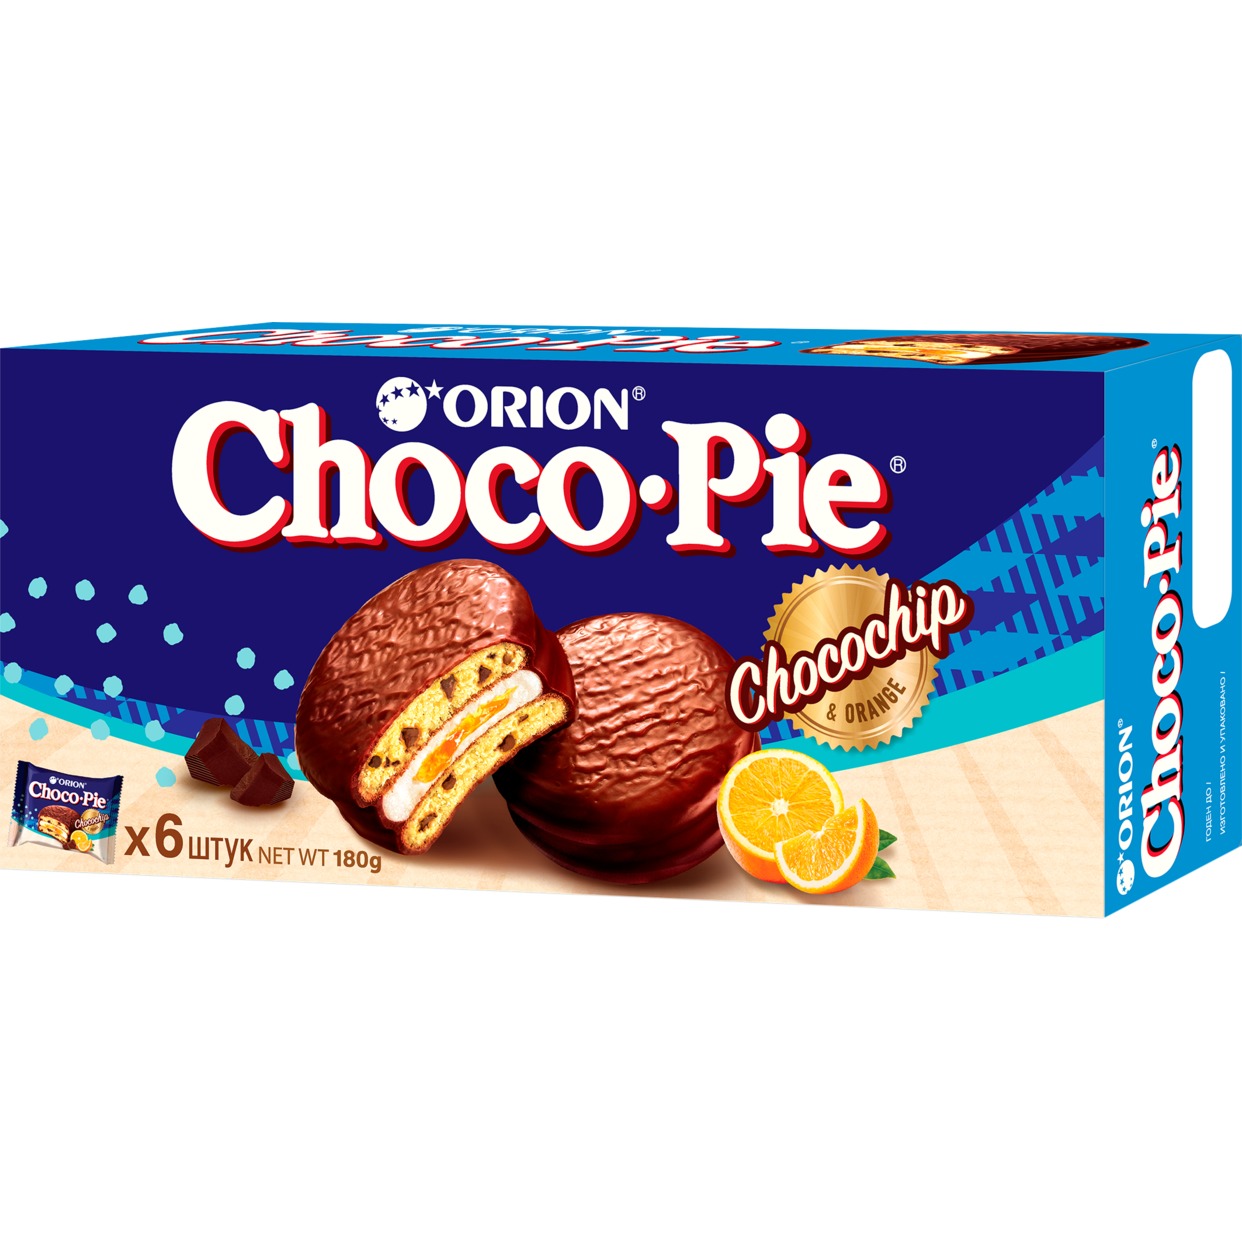 Мучное кондитерское изделие с кусочками шоколада в глазури «Choco Pie Chocochip» («Чоко Пай Чокочип»), 180 гр по акции в Пятерочке